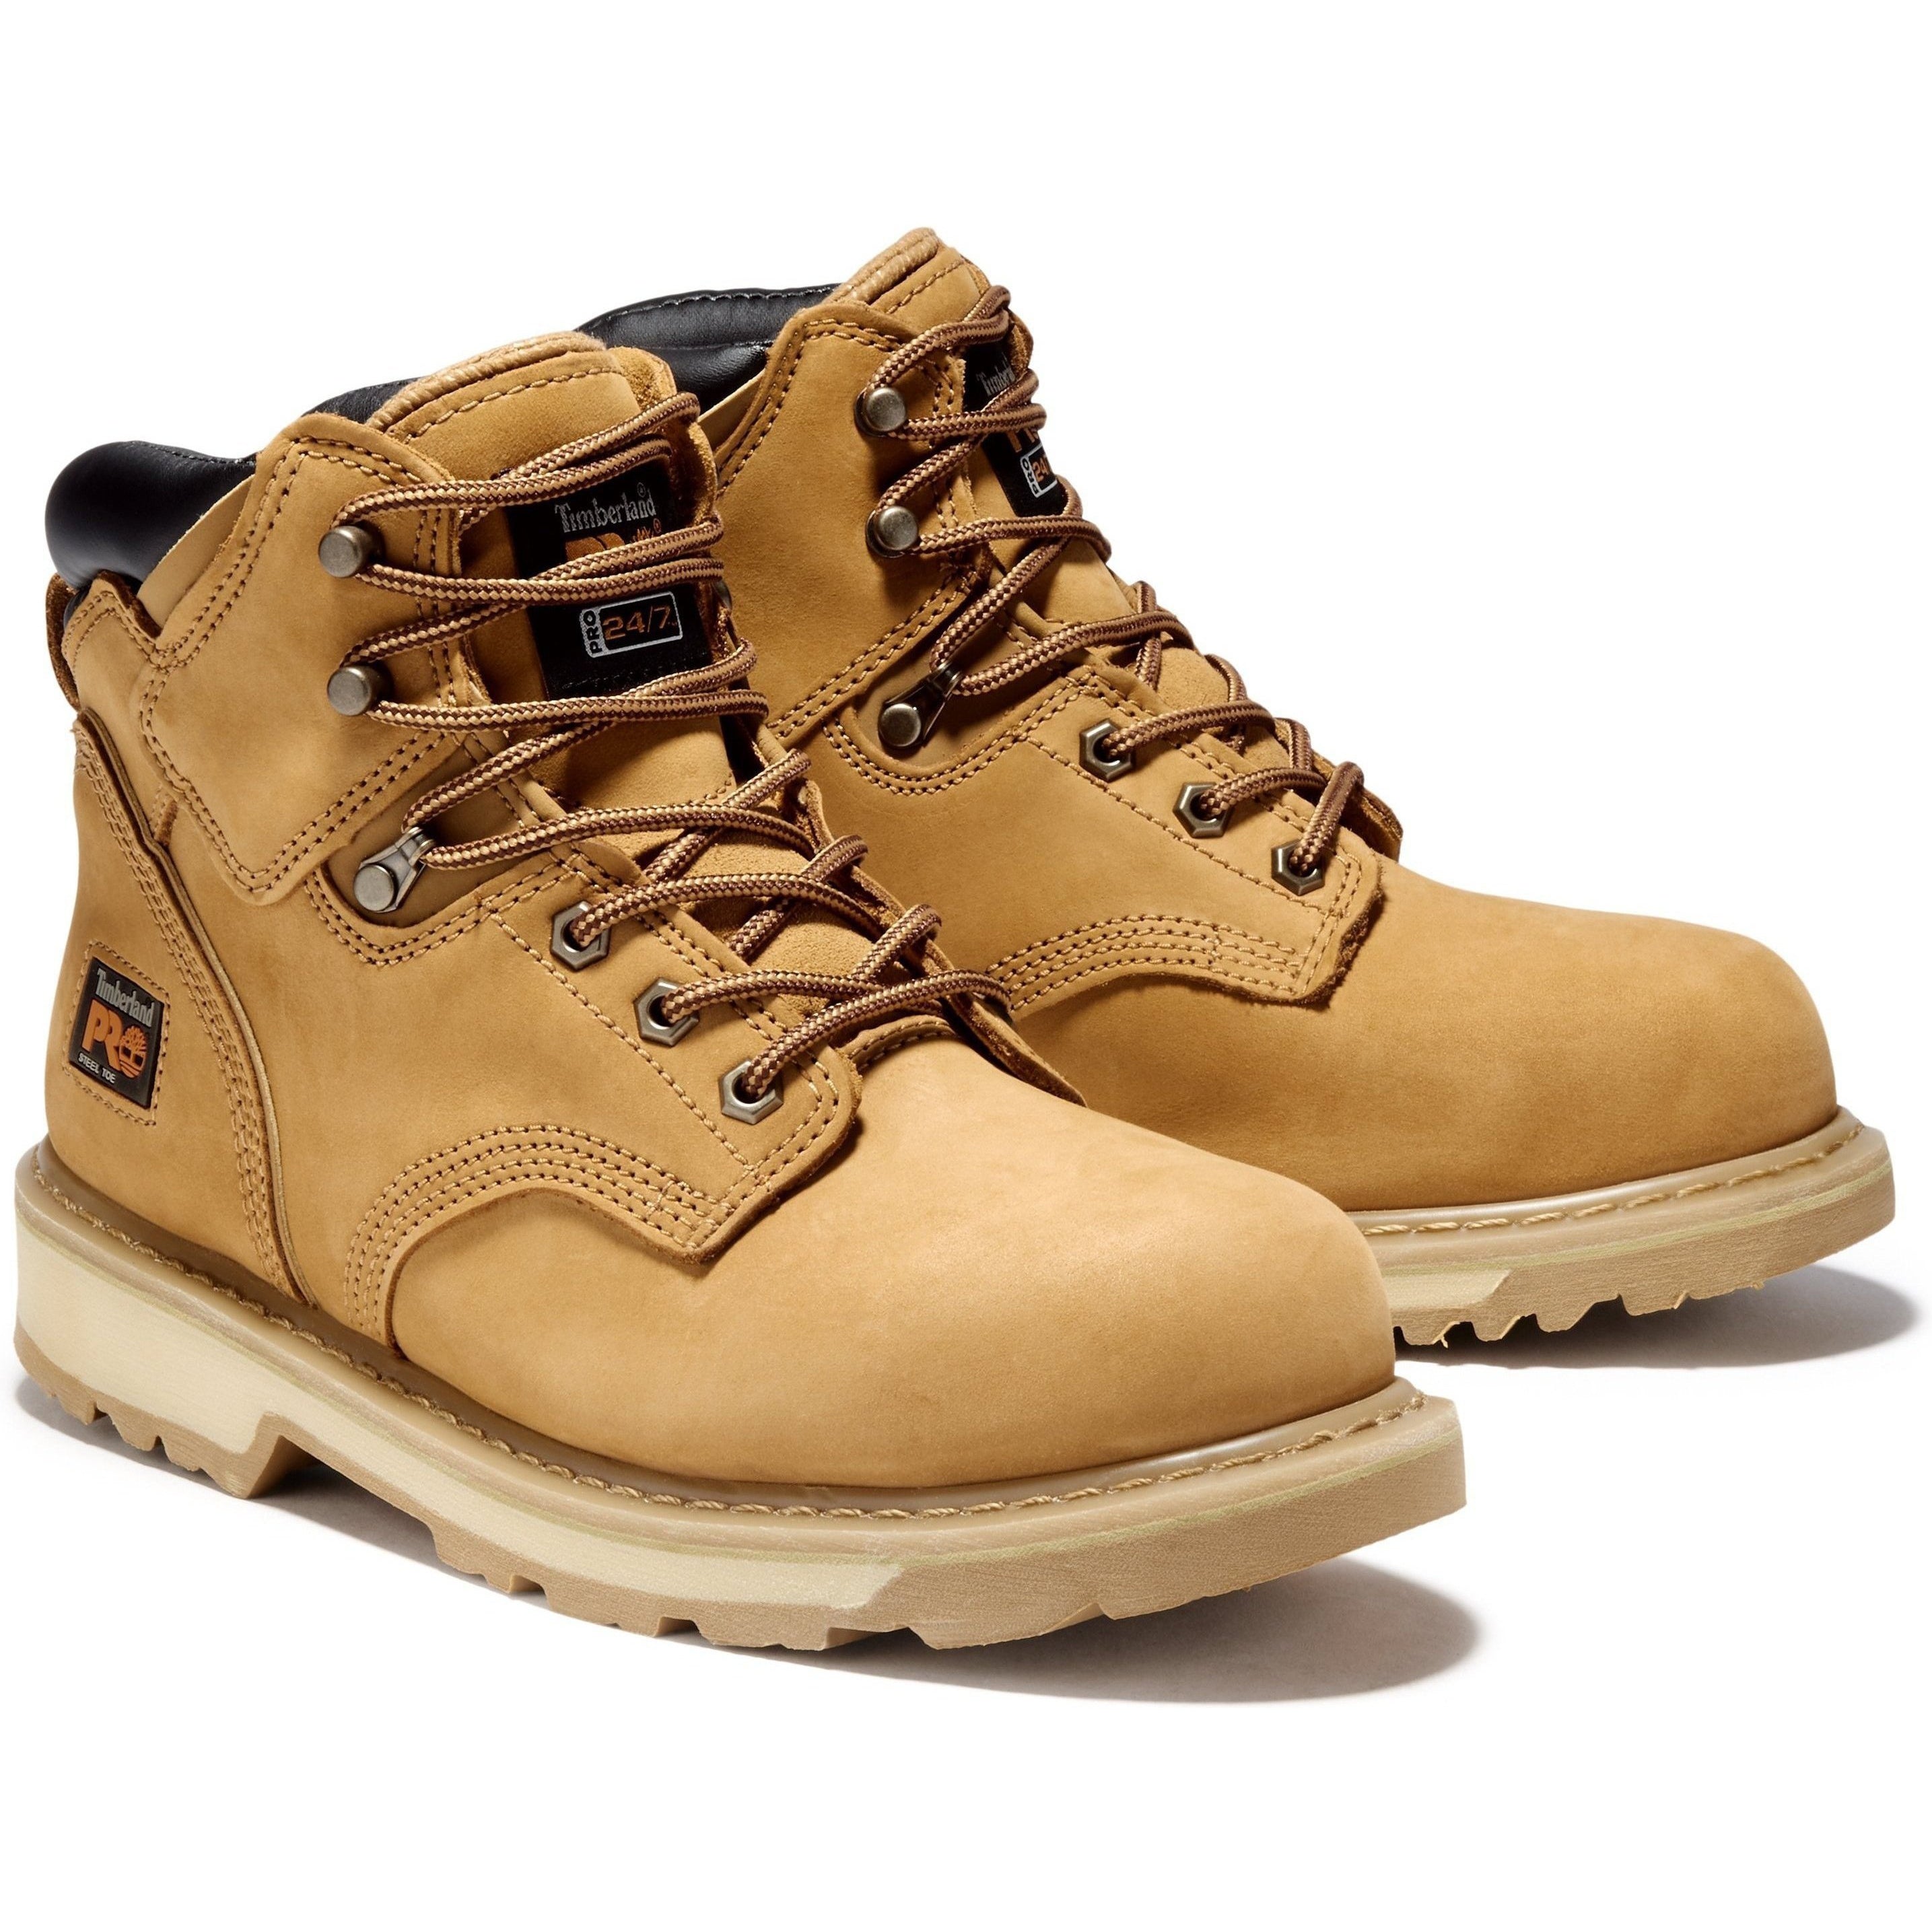 Timberland PRO Men's Pit Boss 6" Steel Toe Work Boot - TB133031231 7 / Medium / Wheat Nubuck - Overlook Boots